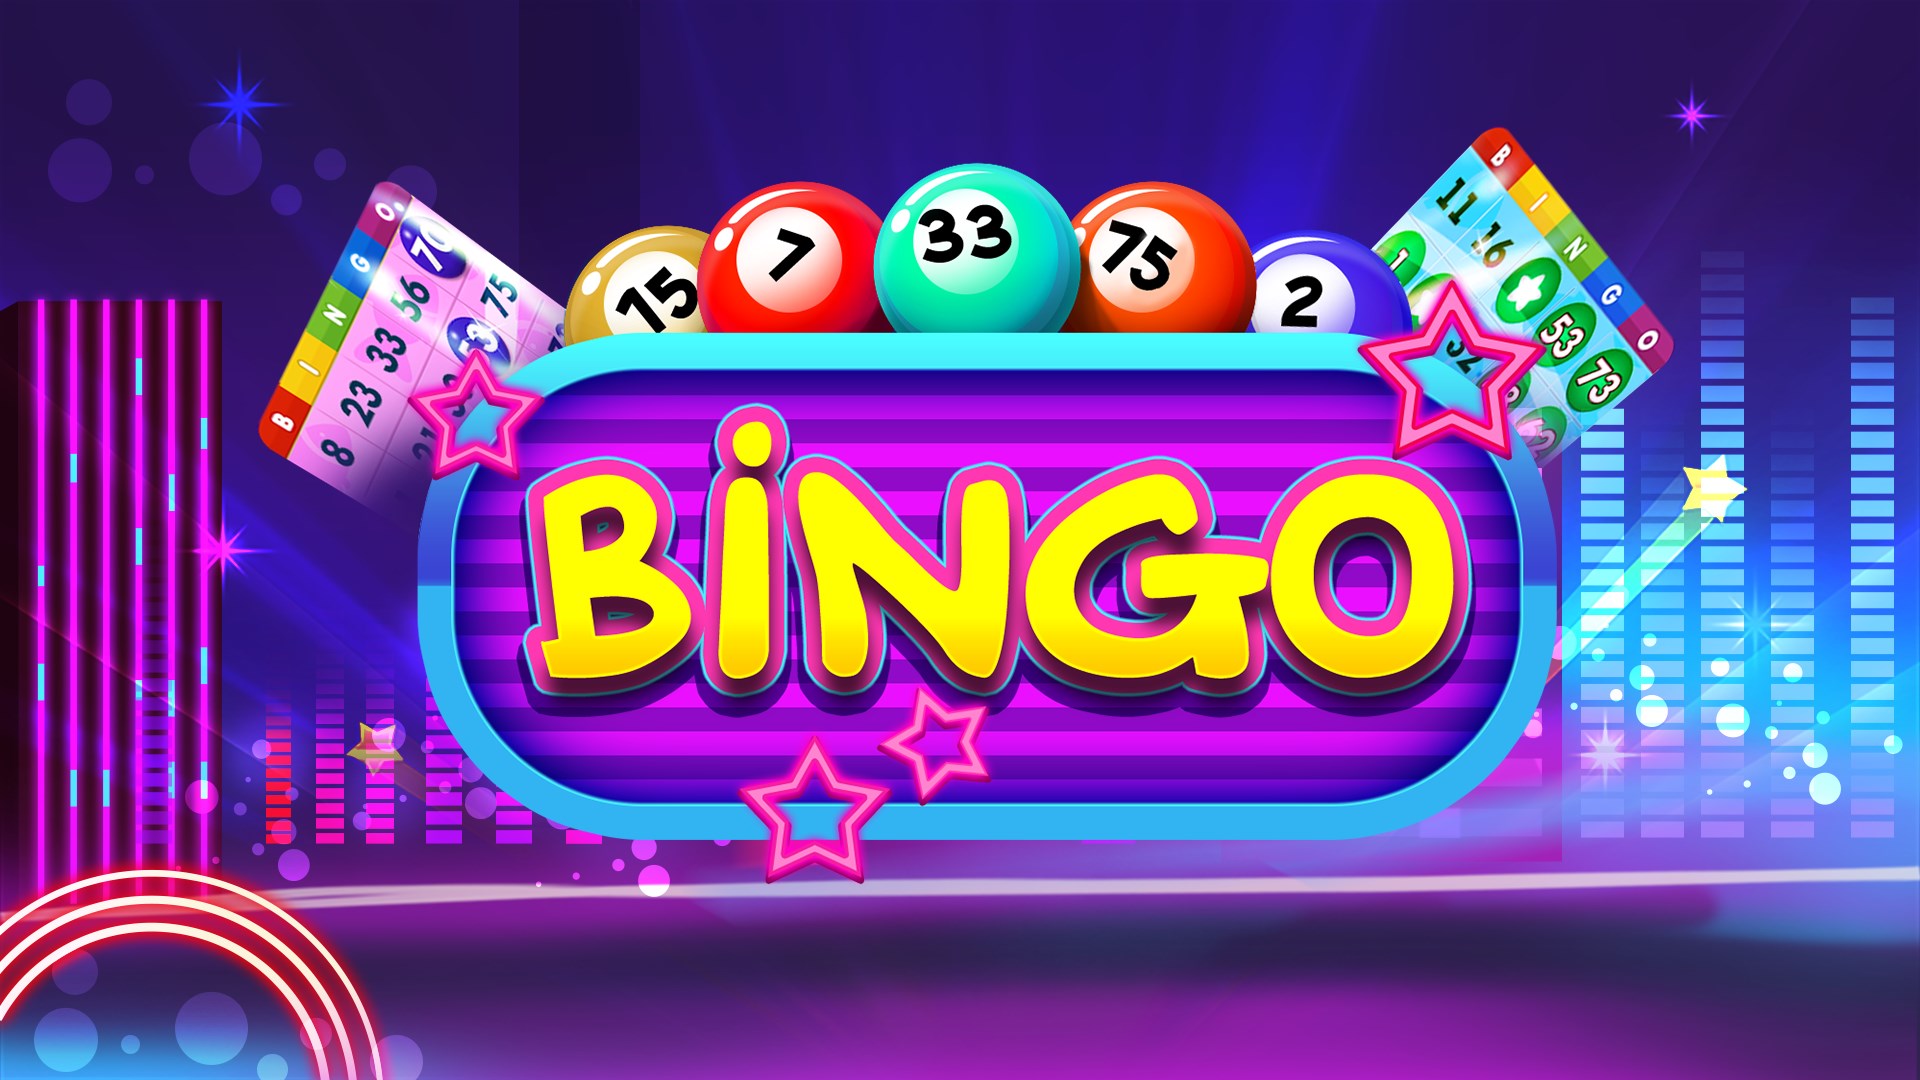 Casino bingo online games играть онлайн бесплатно в игровые автоматы без регистрации гараж